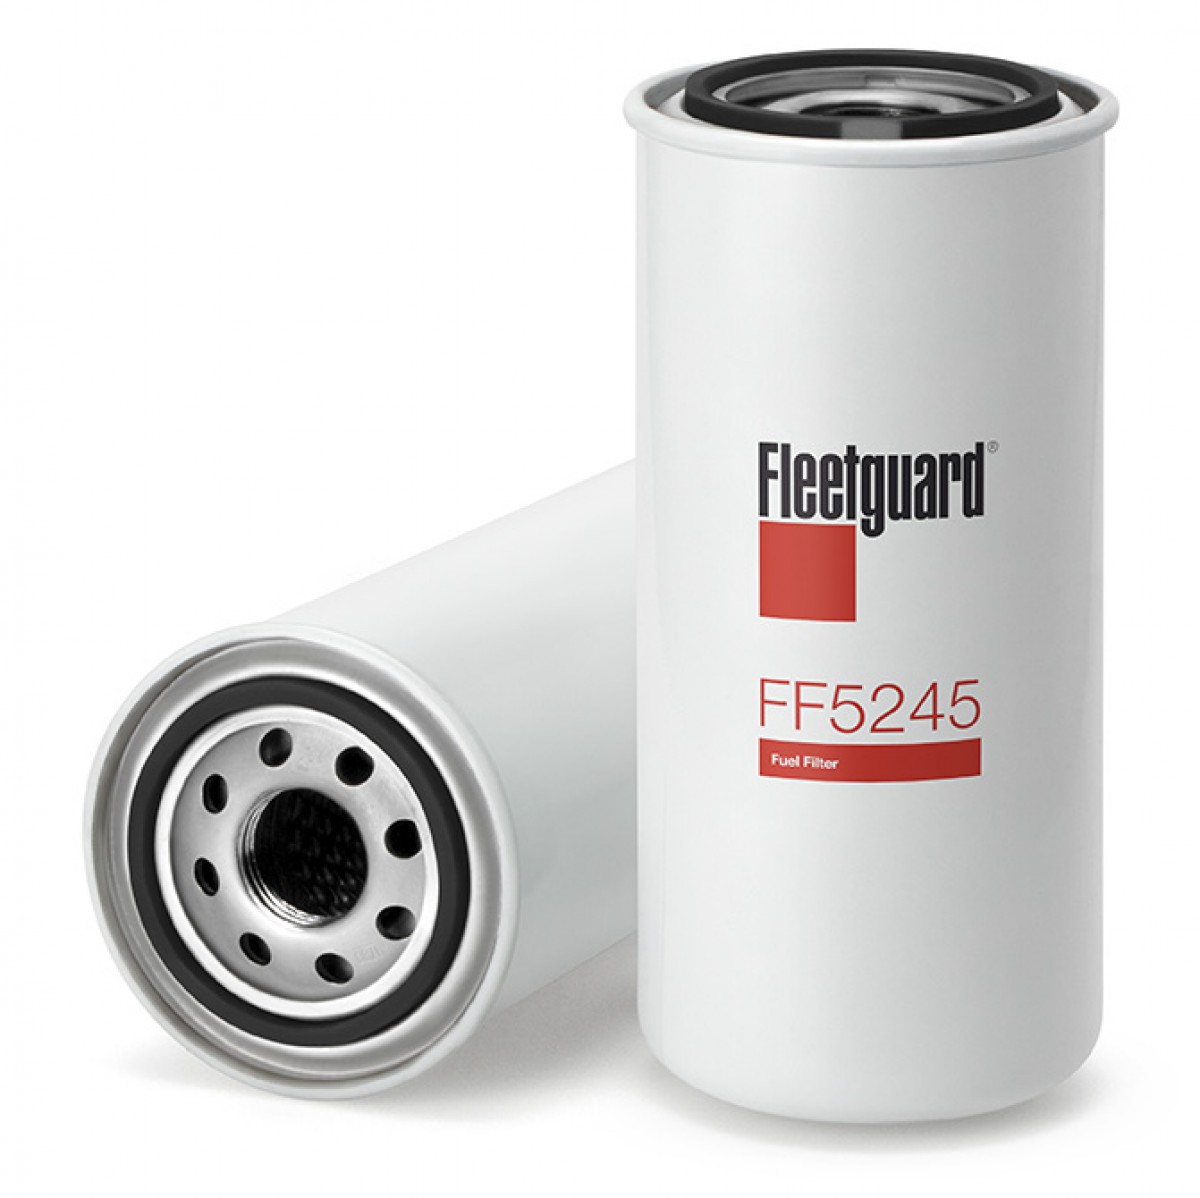 Filtr paliwa  FF 5245 do WIRTGEN SF 1000